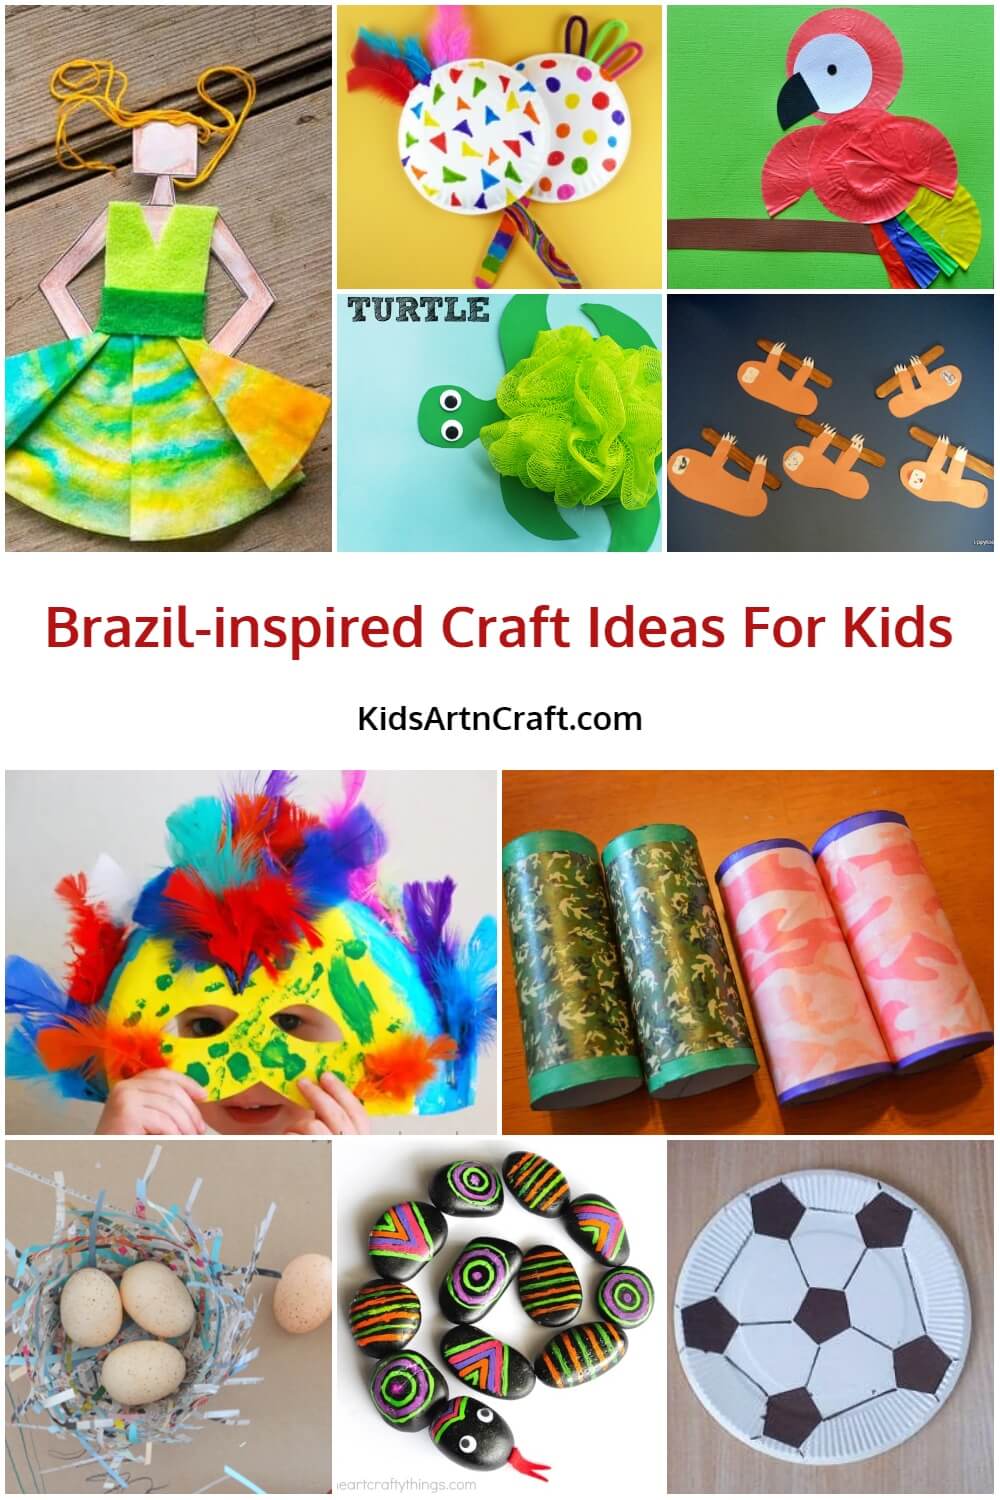 Brazil-inspired Craft Ideas For Kids